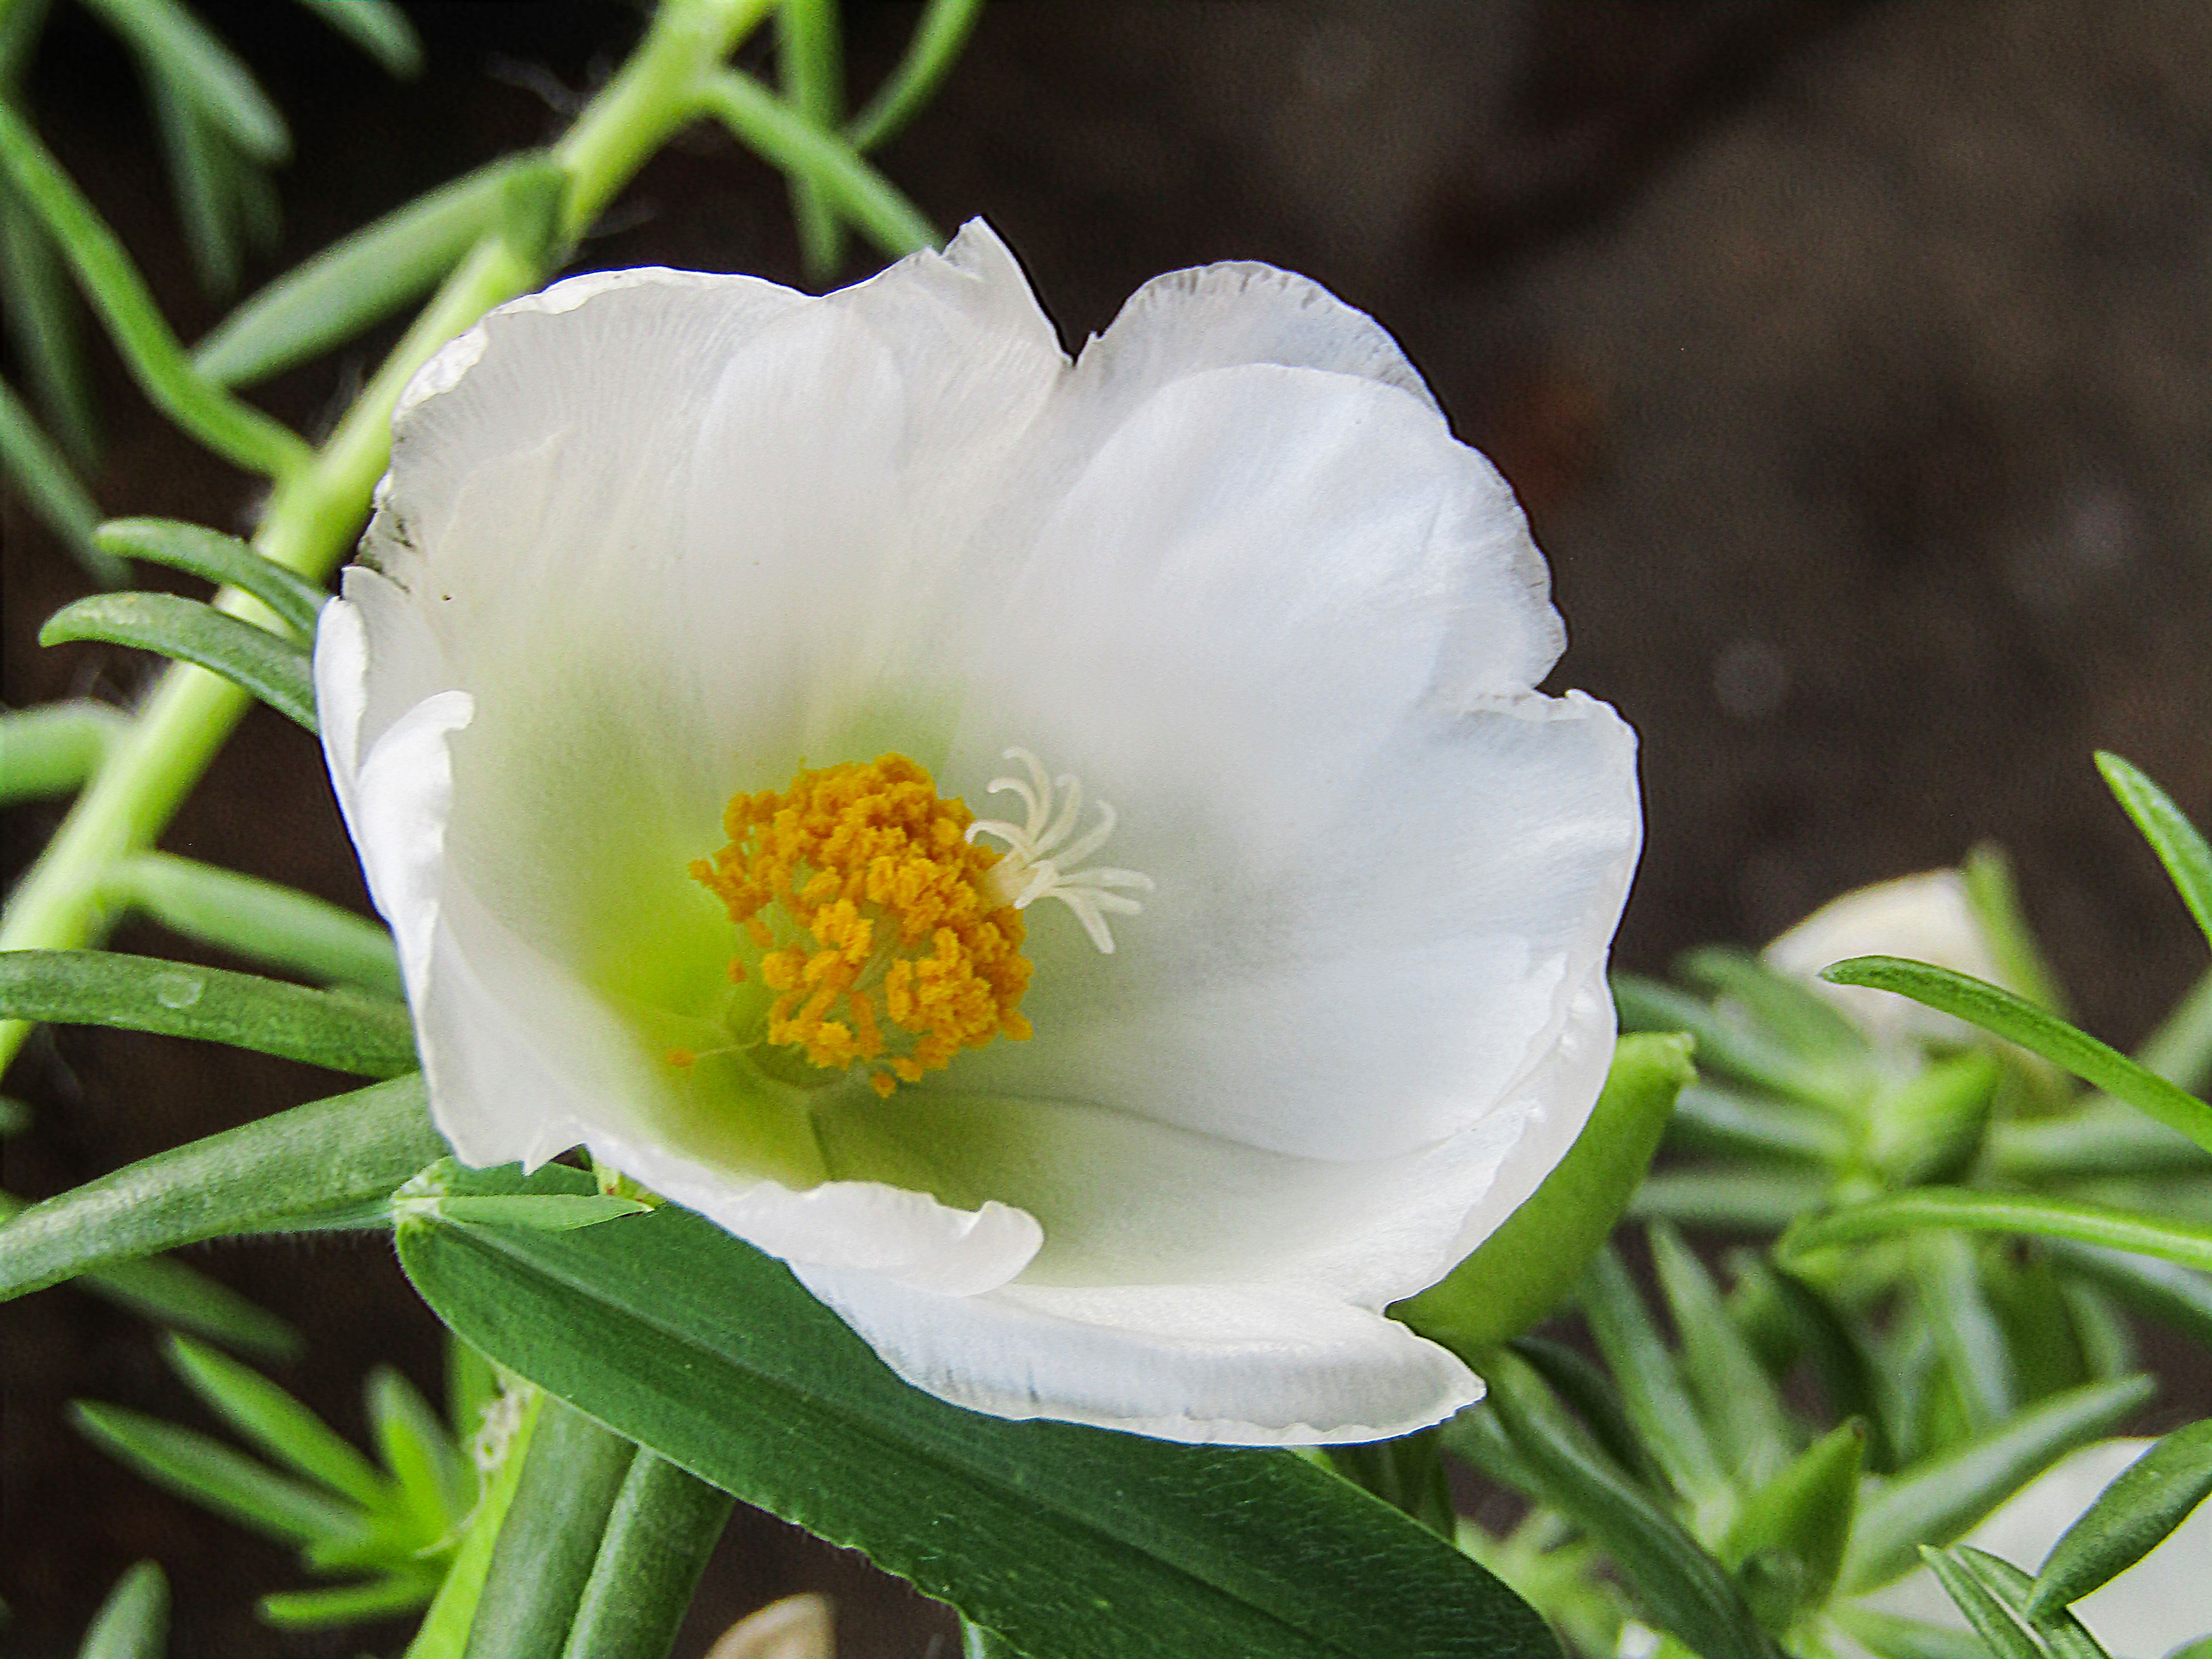 whiteflower.jpg